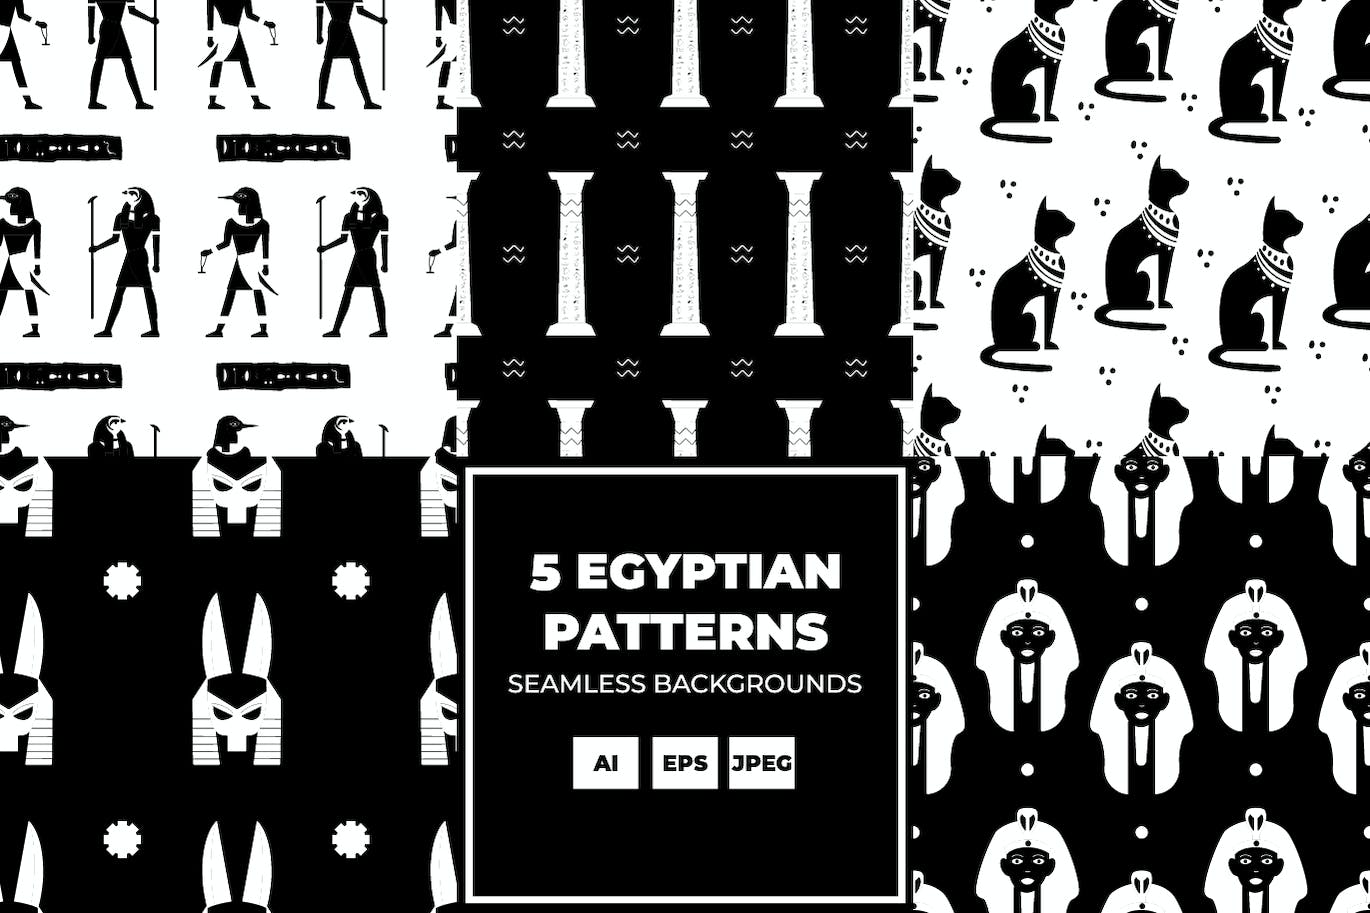 古埃及背景 (AI,EPS,JPG)